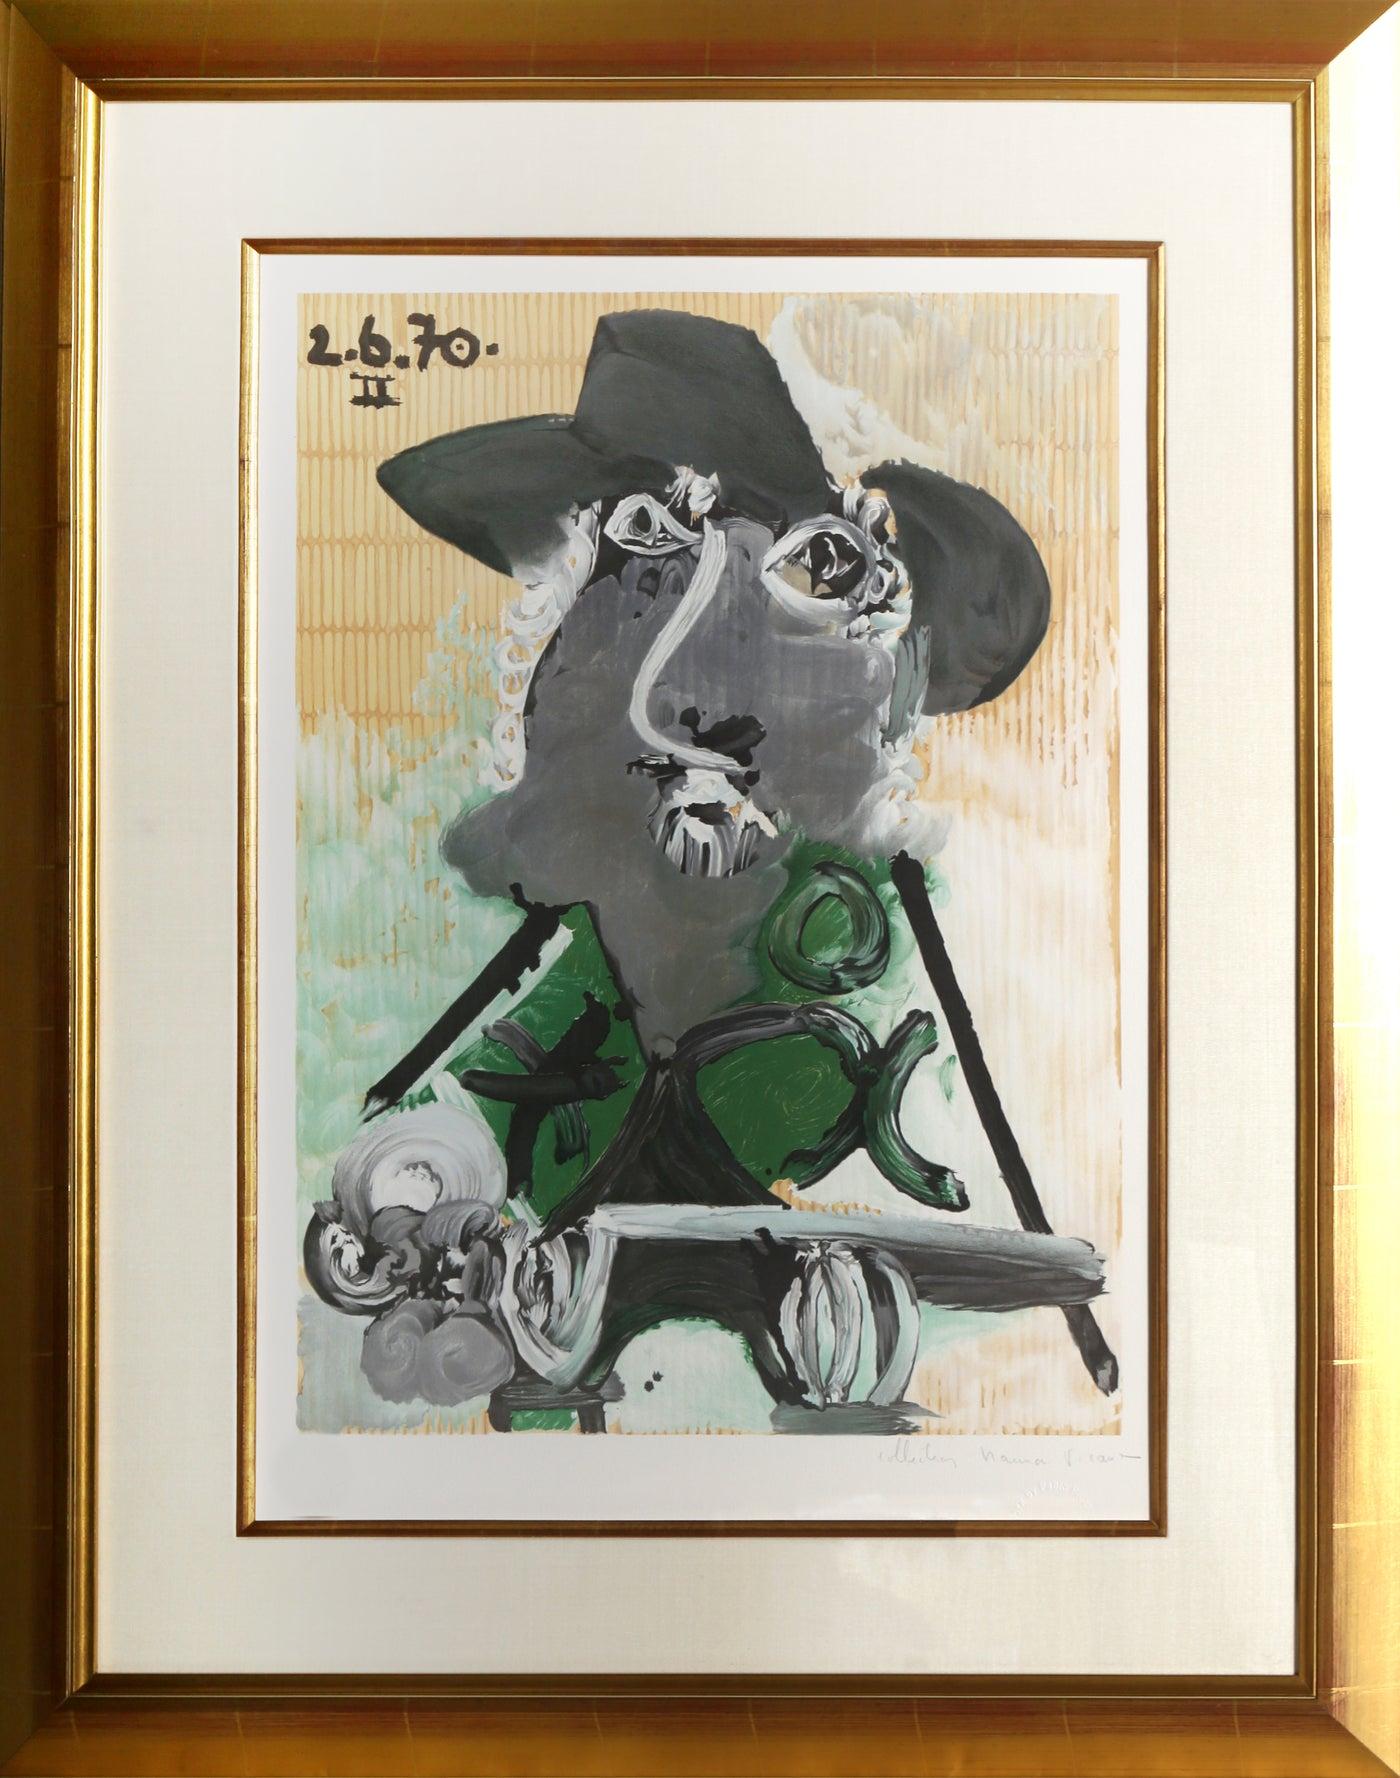 Eine Lithographie aus der Marina Picasso Estate Collection nach dem Gemälde "Portrait d'Homme au Chapeau" von Pablo Picasso.  Das Originalgemälde wurde 1970 fertiggestellt. In den 1970er Jahren, nach Picassos Tod, autorisierte Marina Picasso, seine